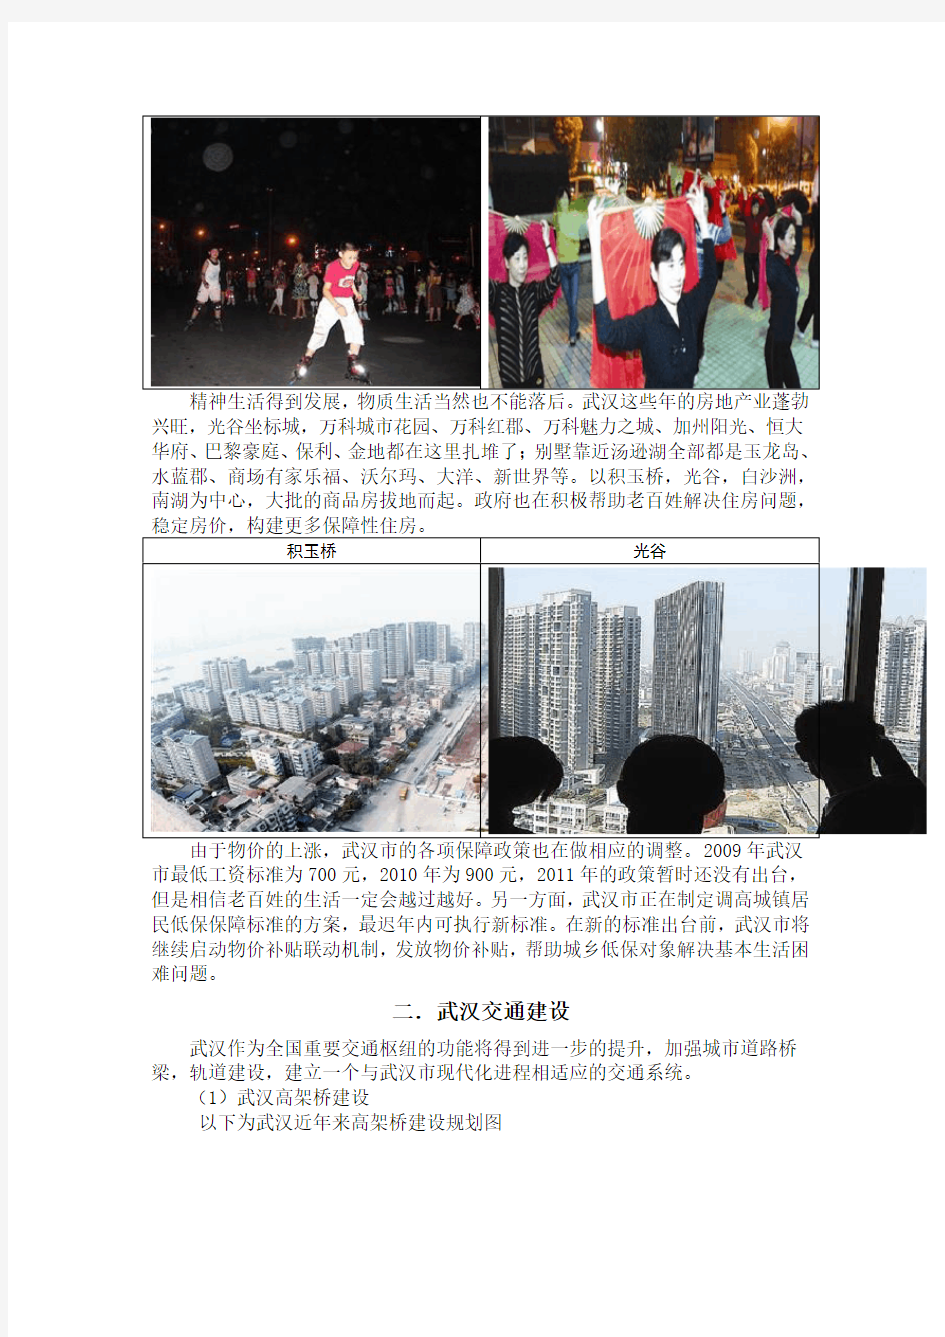 武汉市近三年来发展状态调查